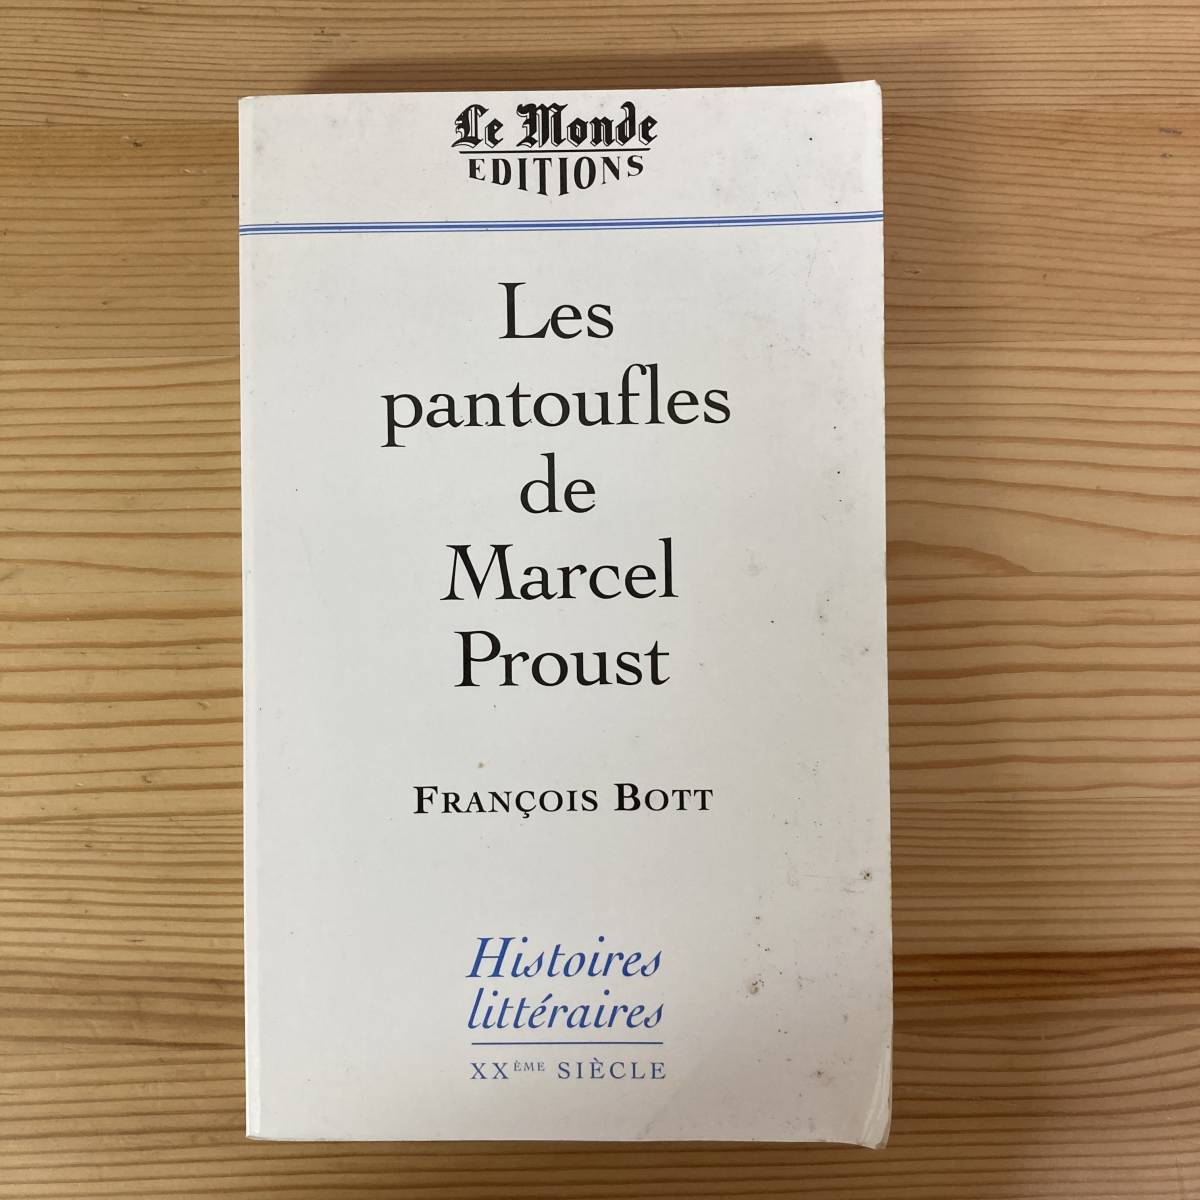 【仏語洋書】Les pantoufles de Marcel Proust / Francois Bott（著）【マルセル・プルースト】_画像1